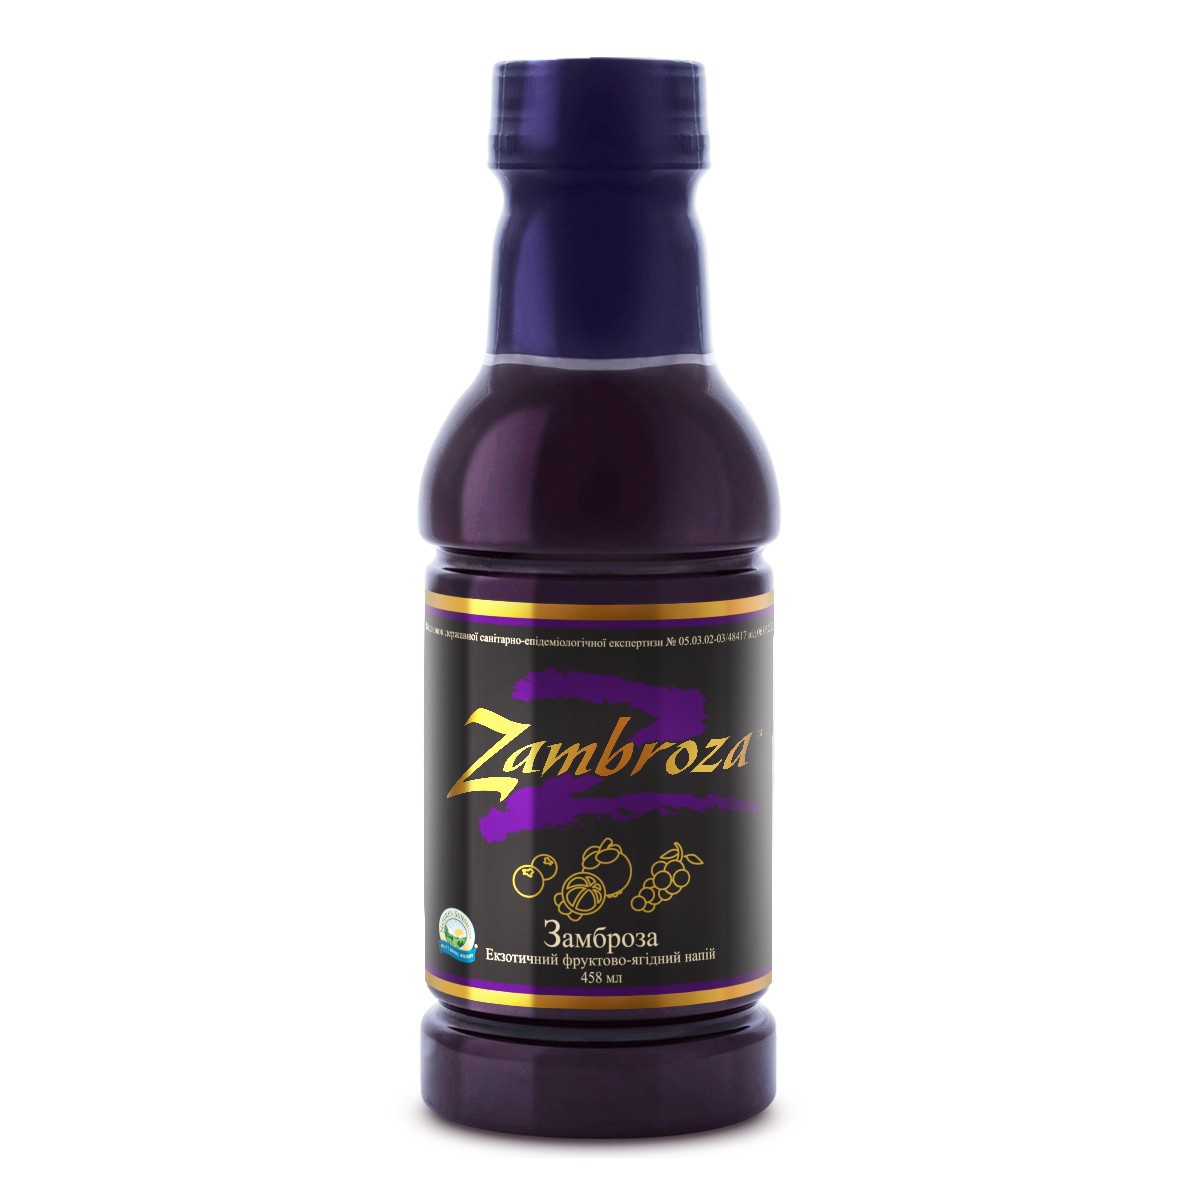 Zambroza* - Замброза* - БАД Nature's Sunshine Products (NSP)